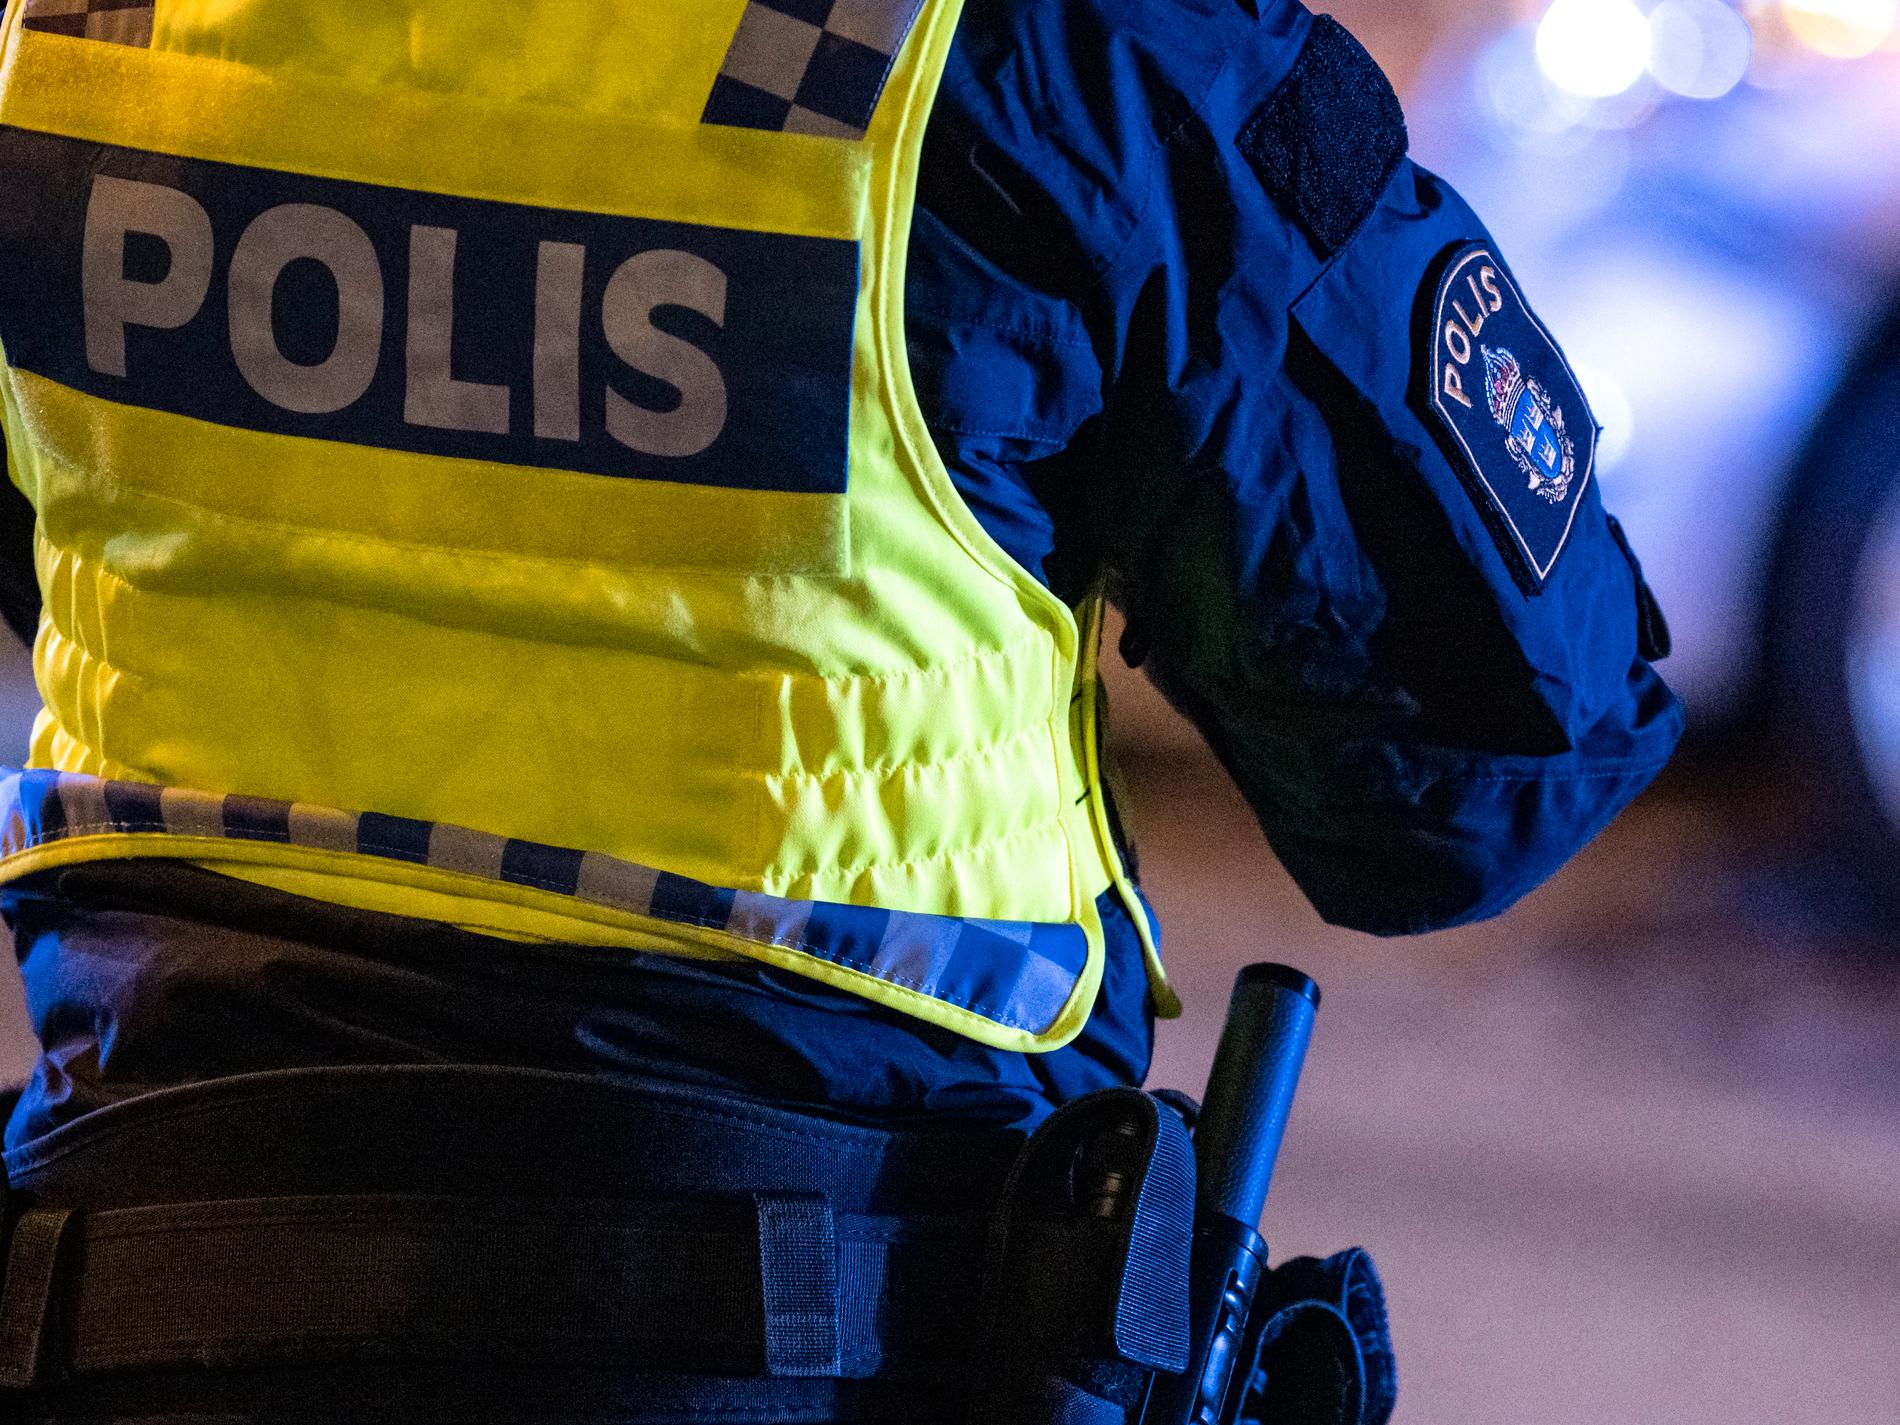 Polis utreder mord efter dödsfall i Kiruna